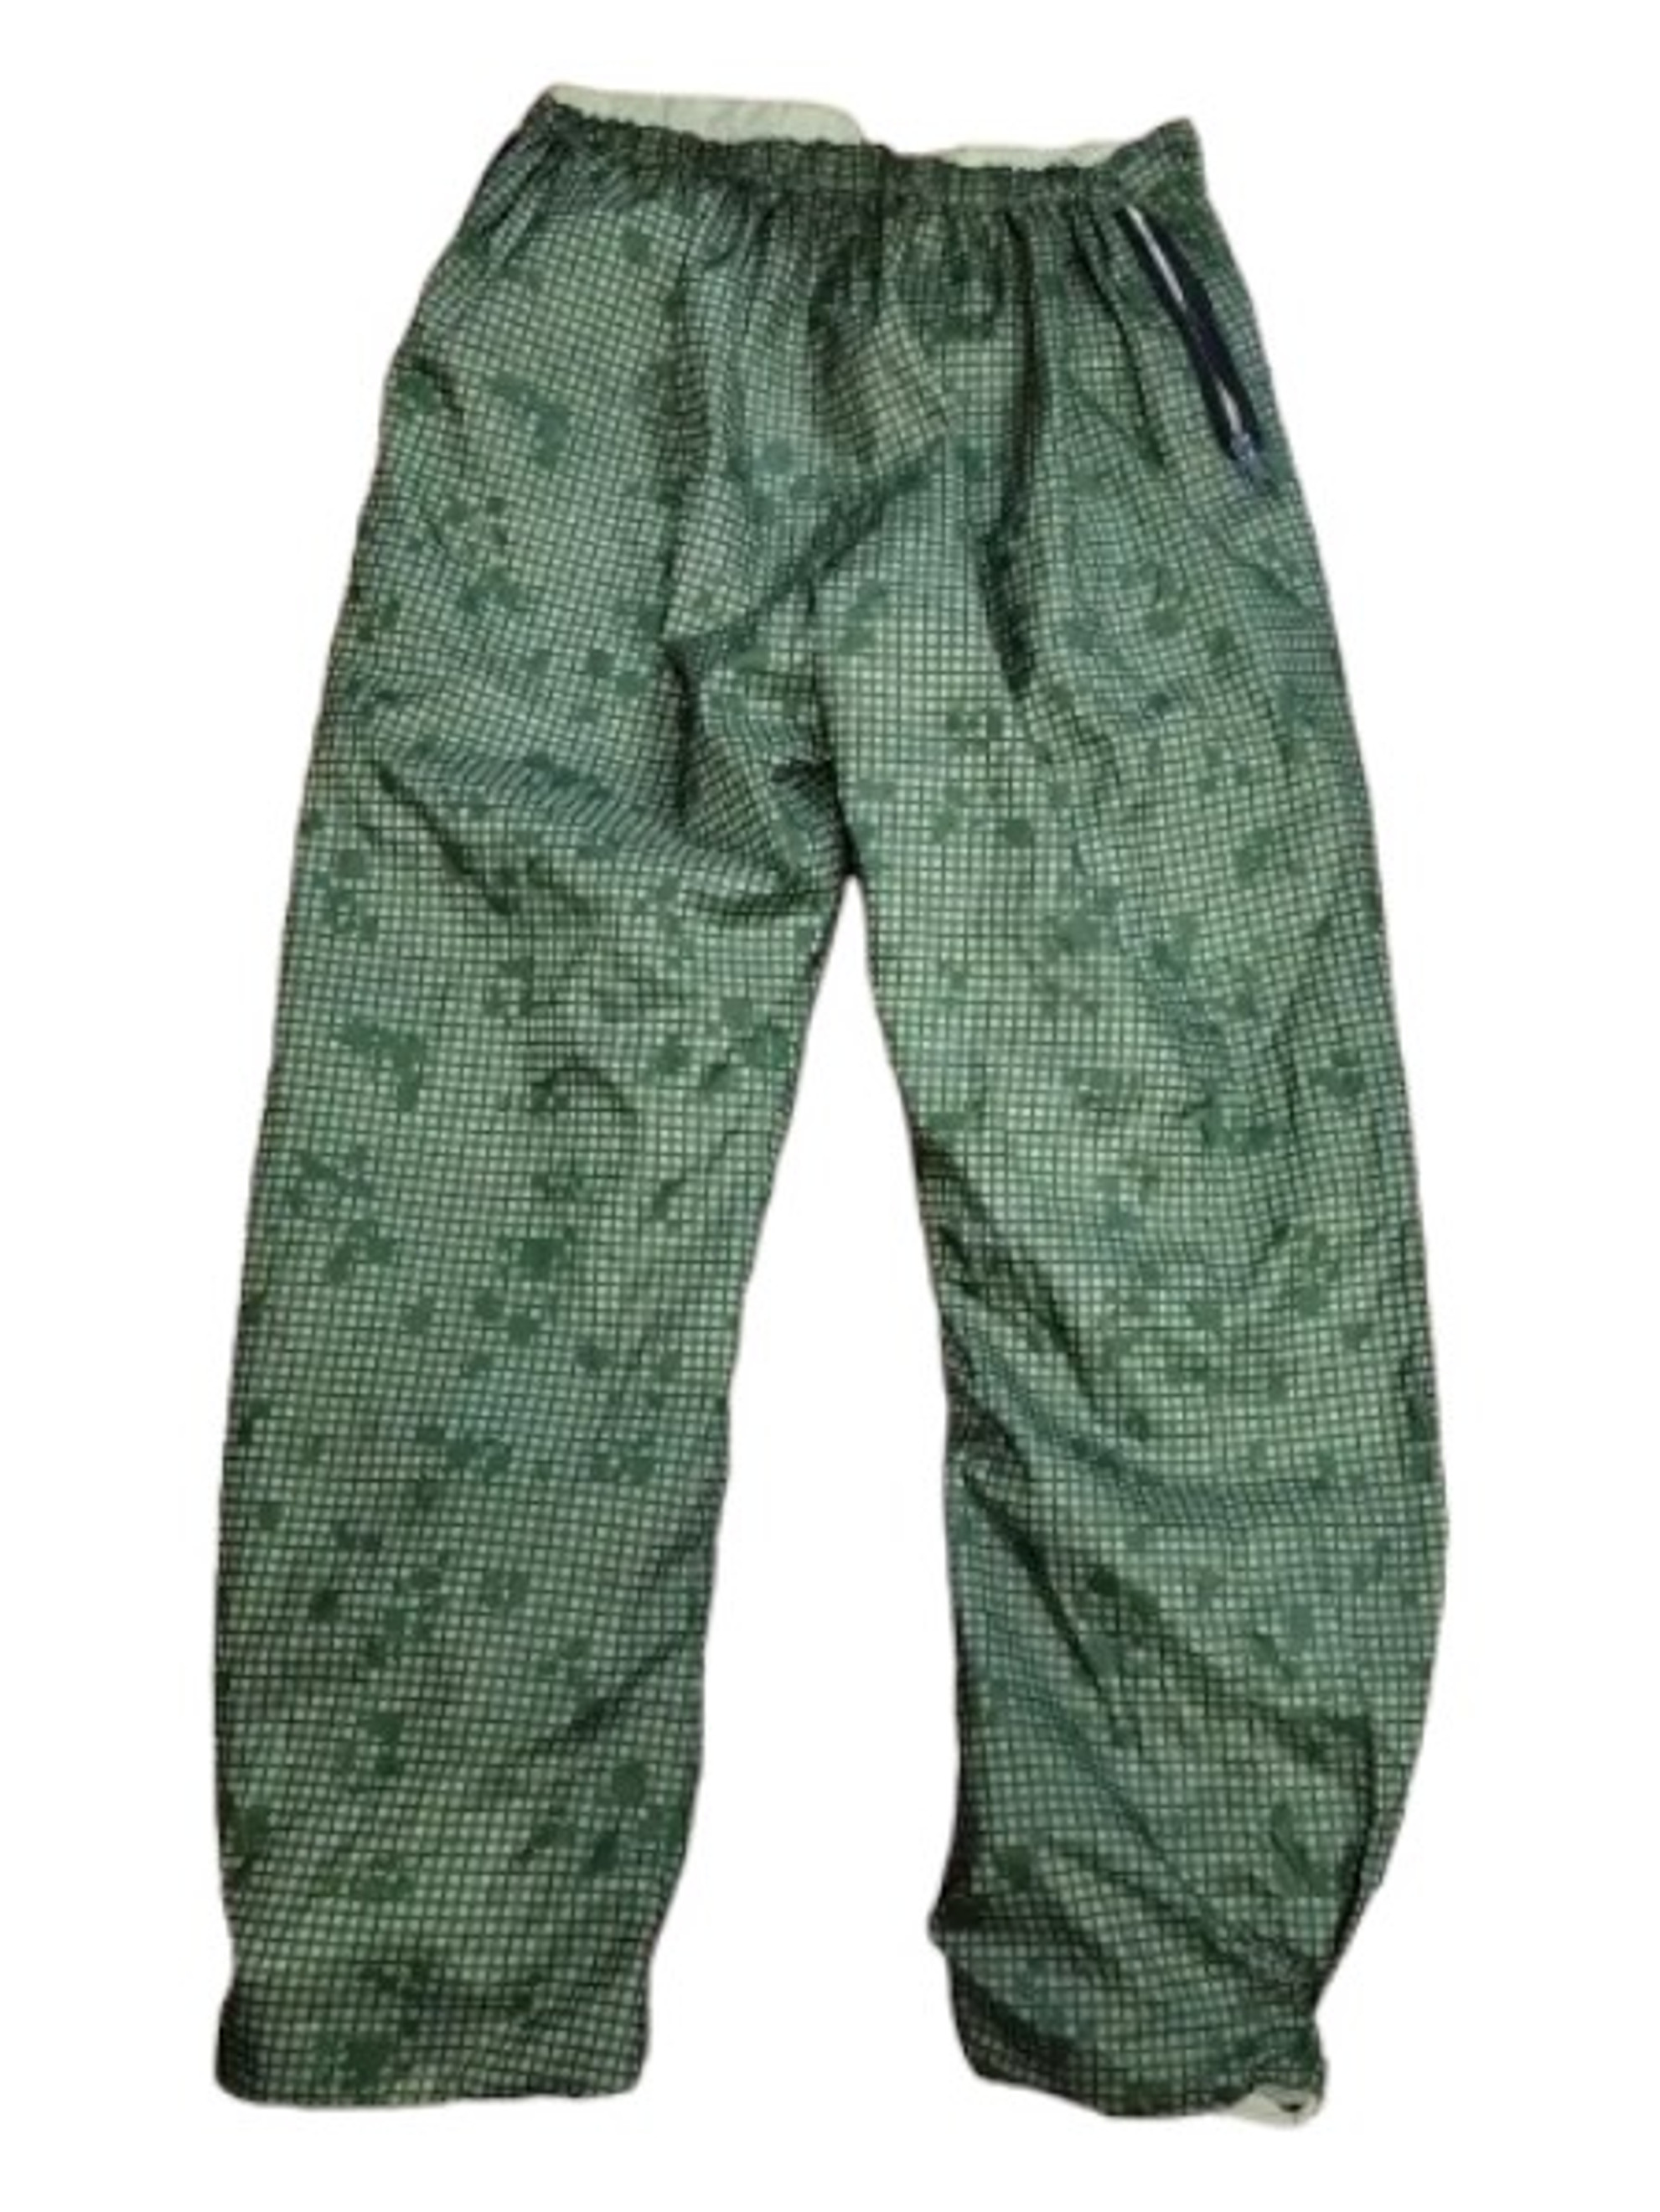 FMI Custom Apparel Desert Night Camouflage, Tri-colour Desert Trouser.